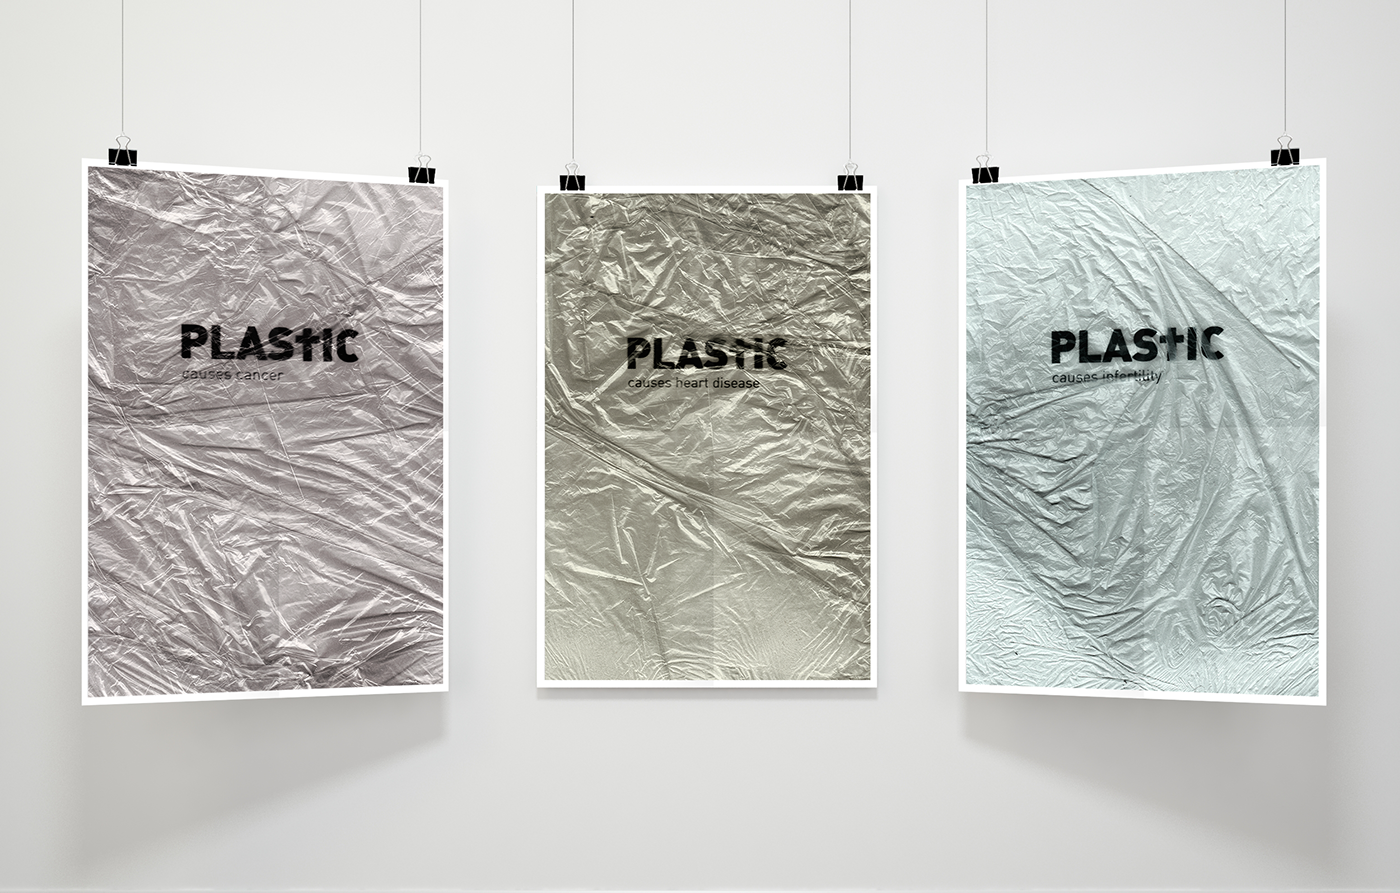 plastic kills